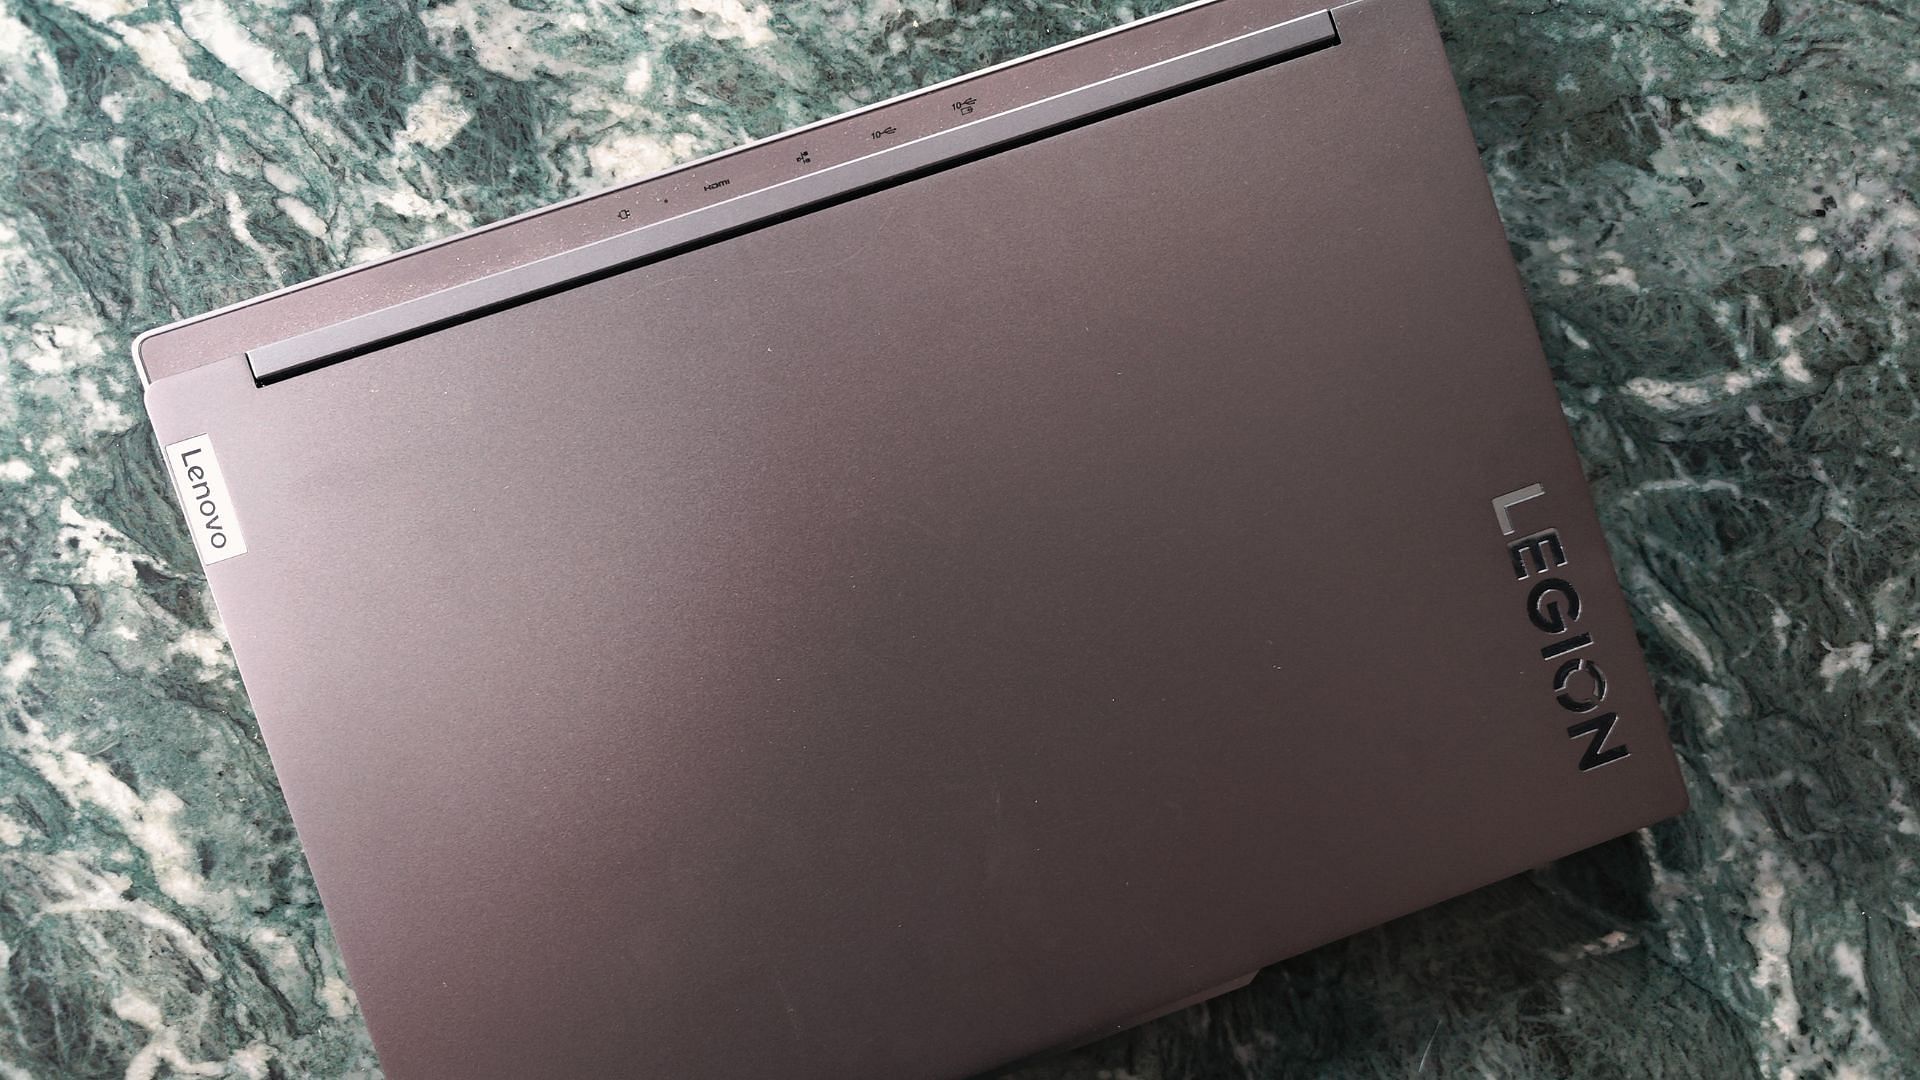 Lenovo Legion Slim 5i laptop (Image via Sportskeeda)